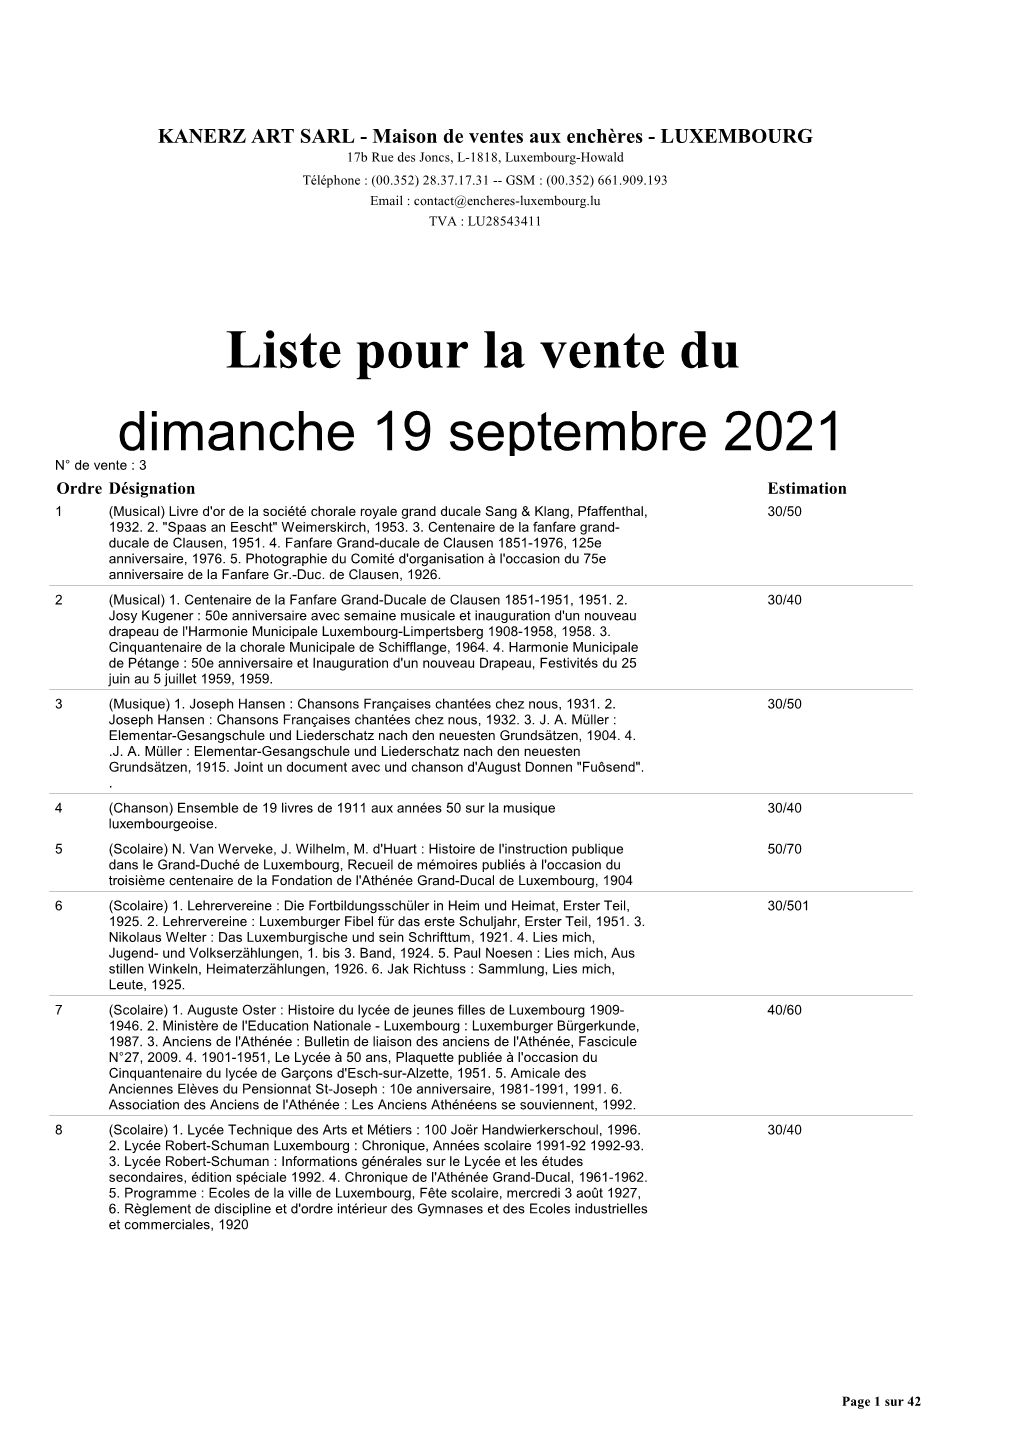 Liste Pour La Vente Du Dimanche 19 Septembre 2021